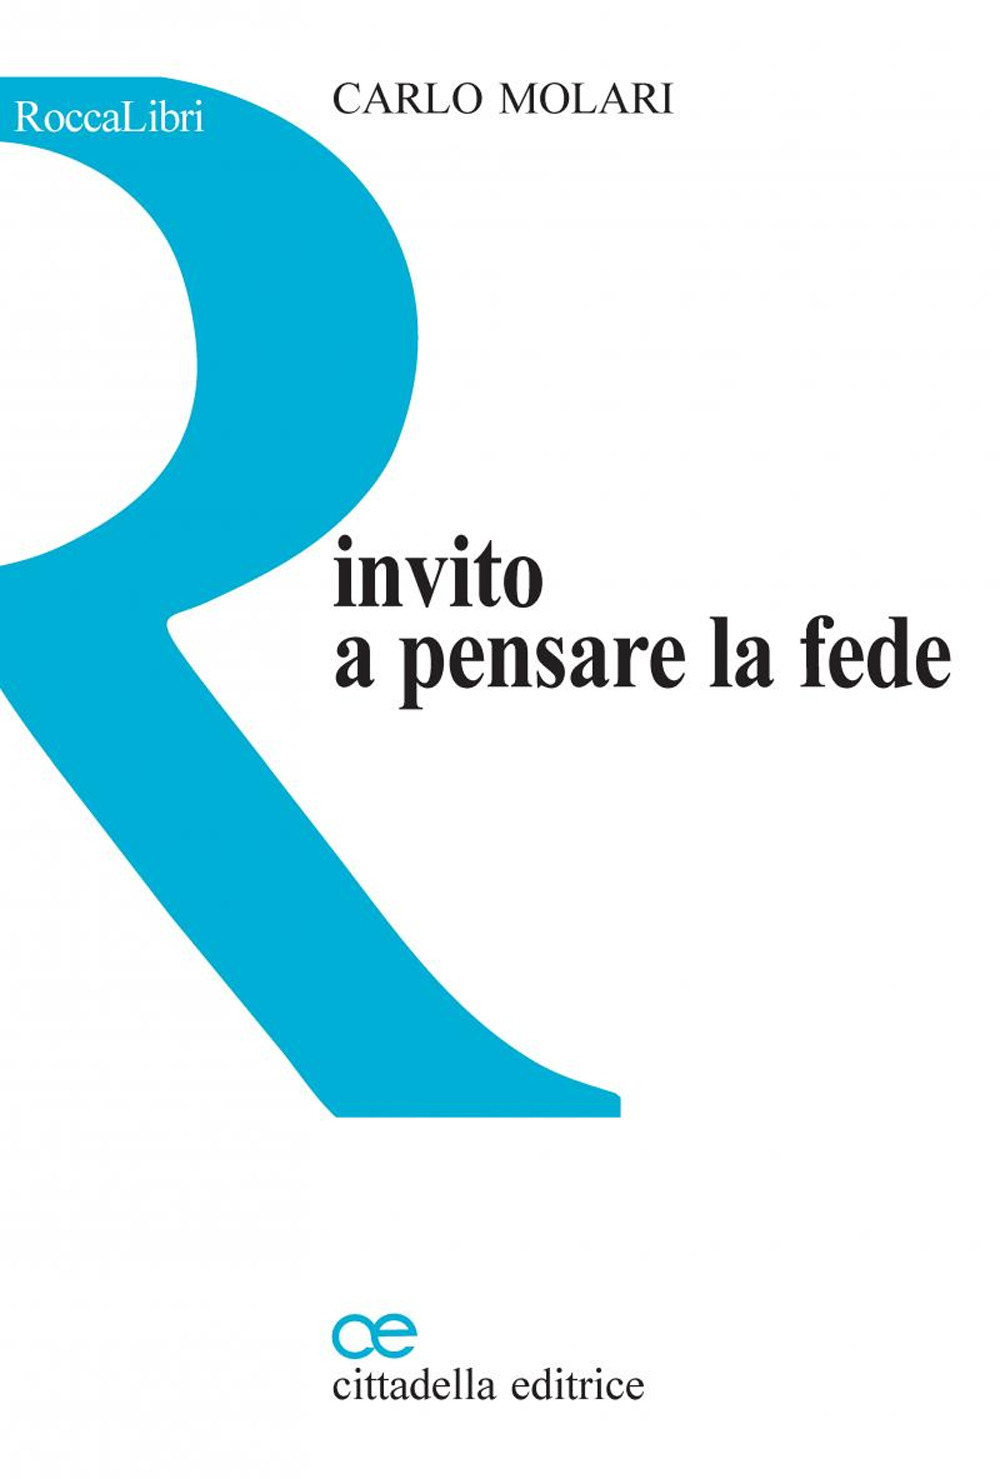 Libri Carlo Molari - Invito A Pensare La Fede NUOVO SIGILLATO, EDIZIONE DEL 27/09/2022 SUBITO DISPONIBILE